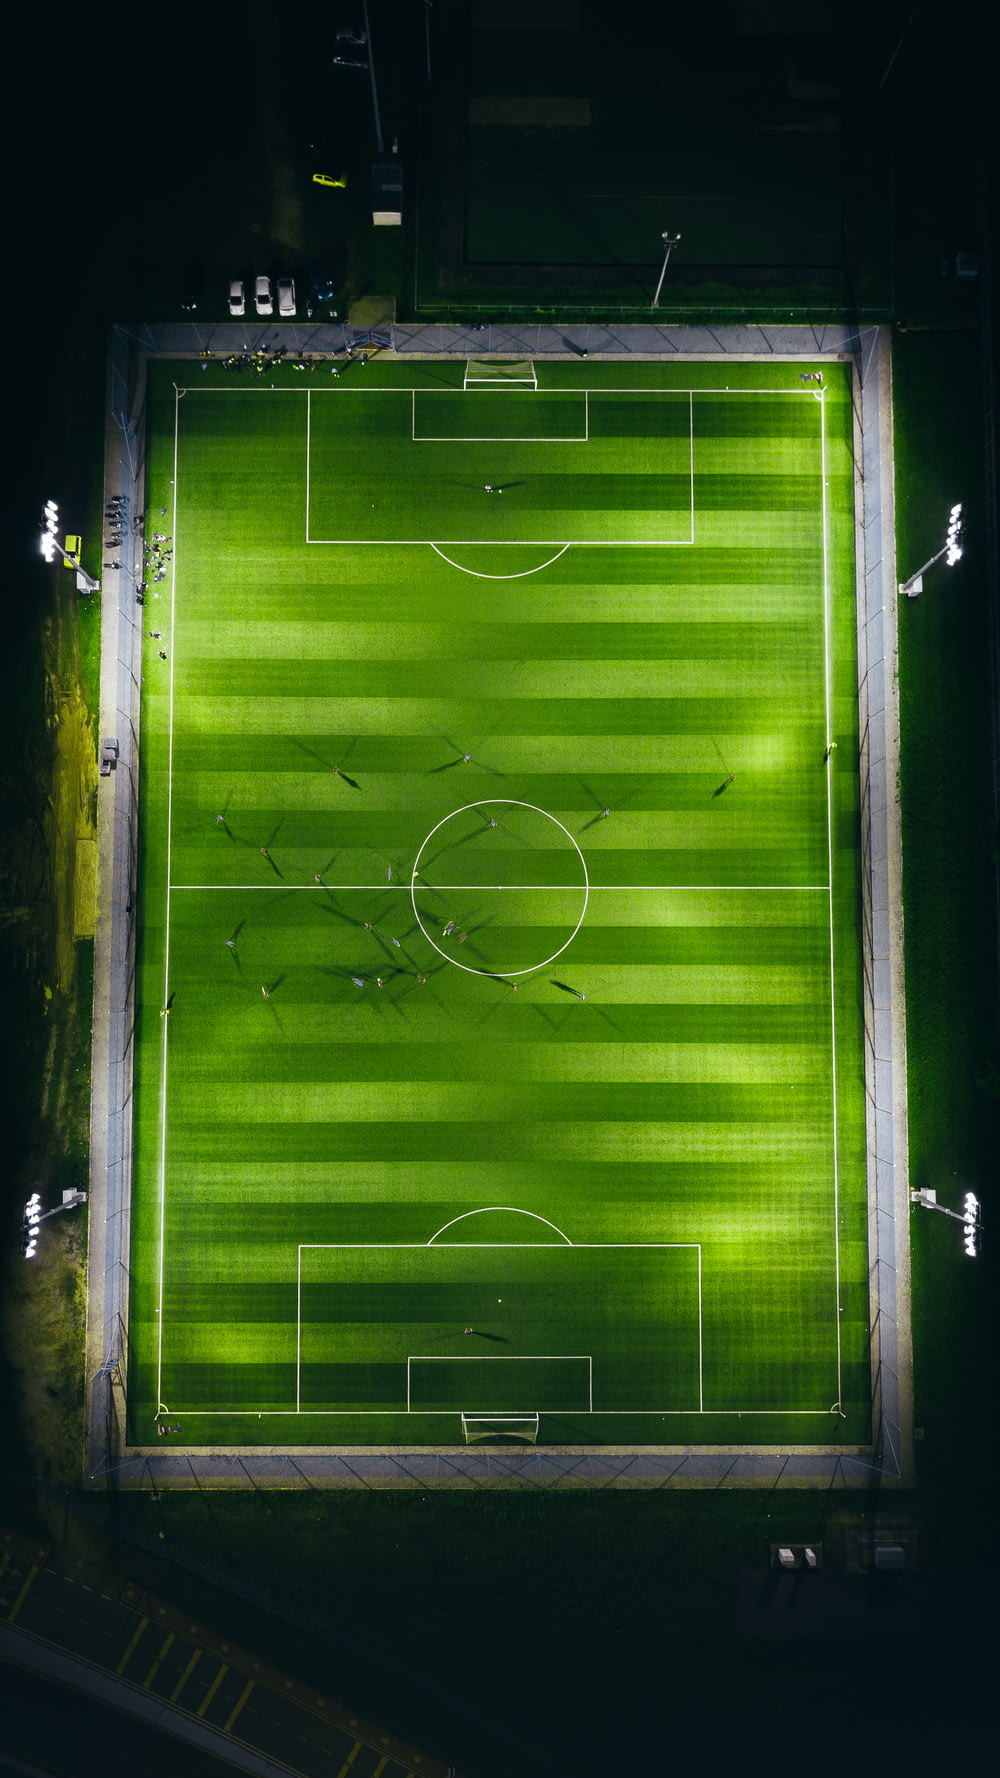 Fotografia a volo d'uccello del campo da calcio verde con le luci